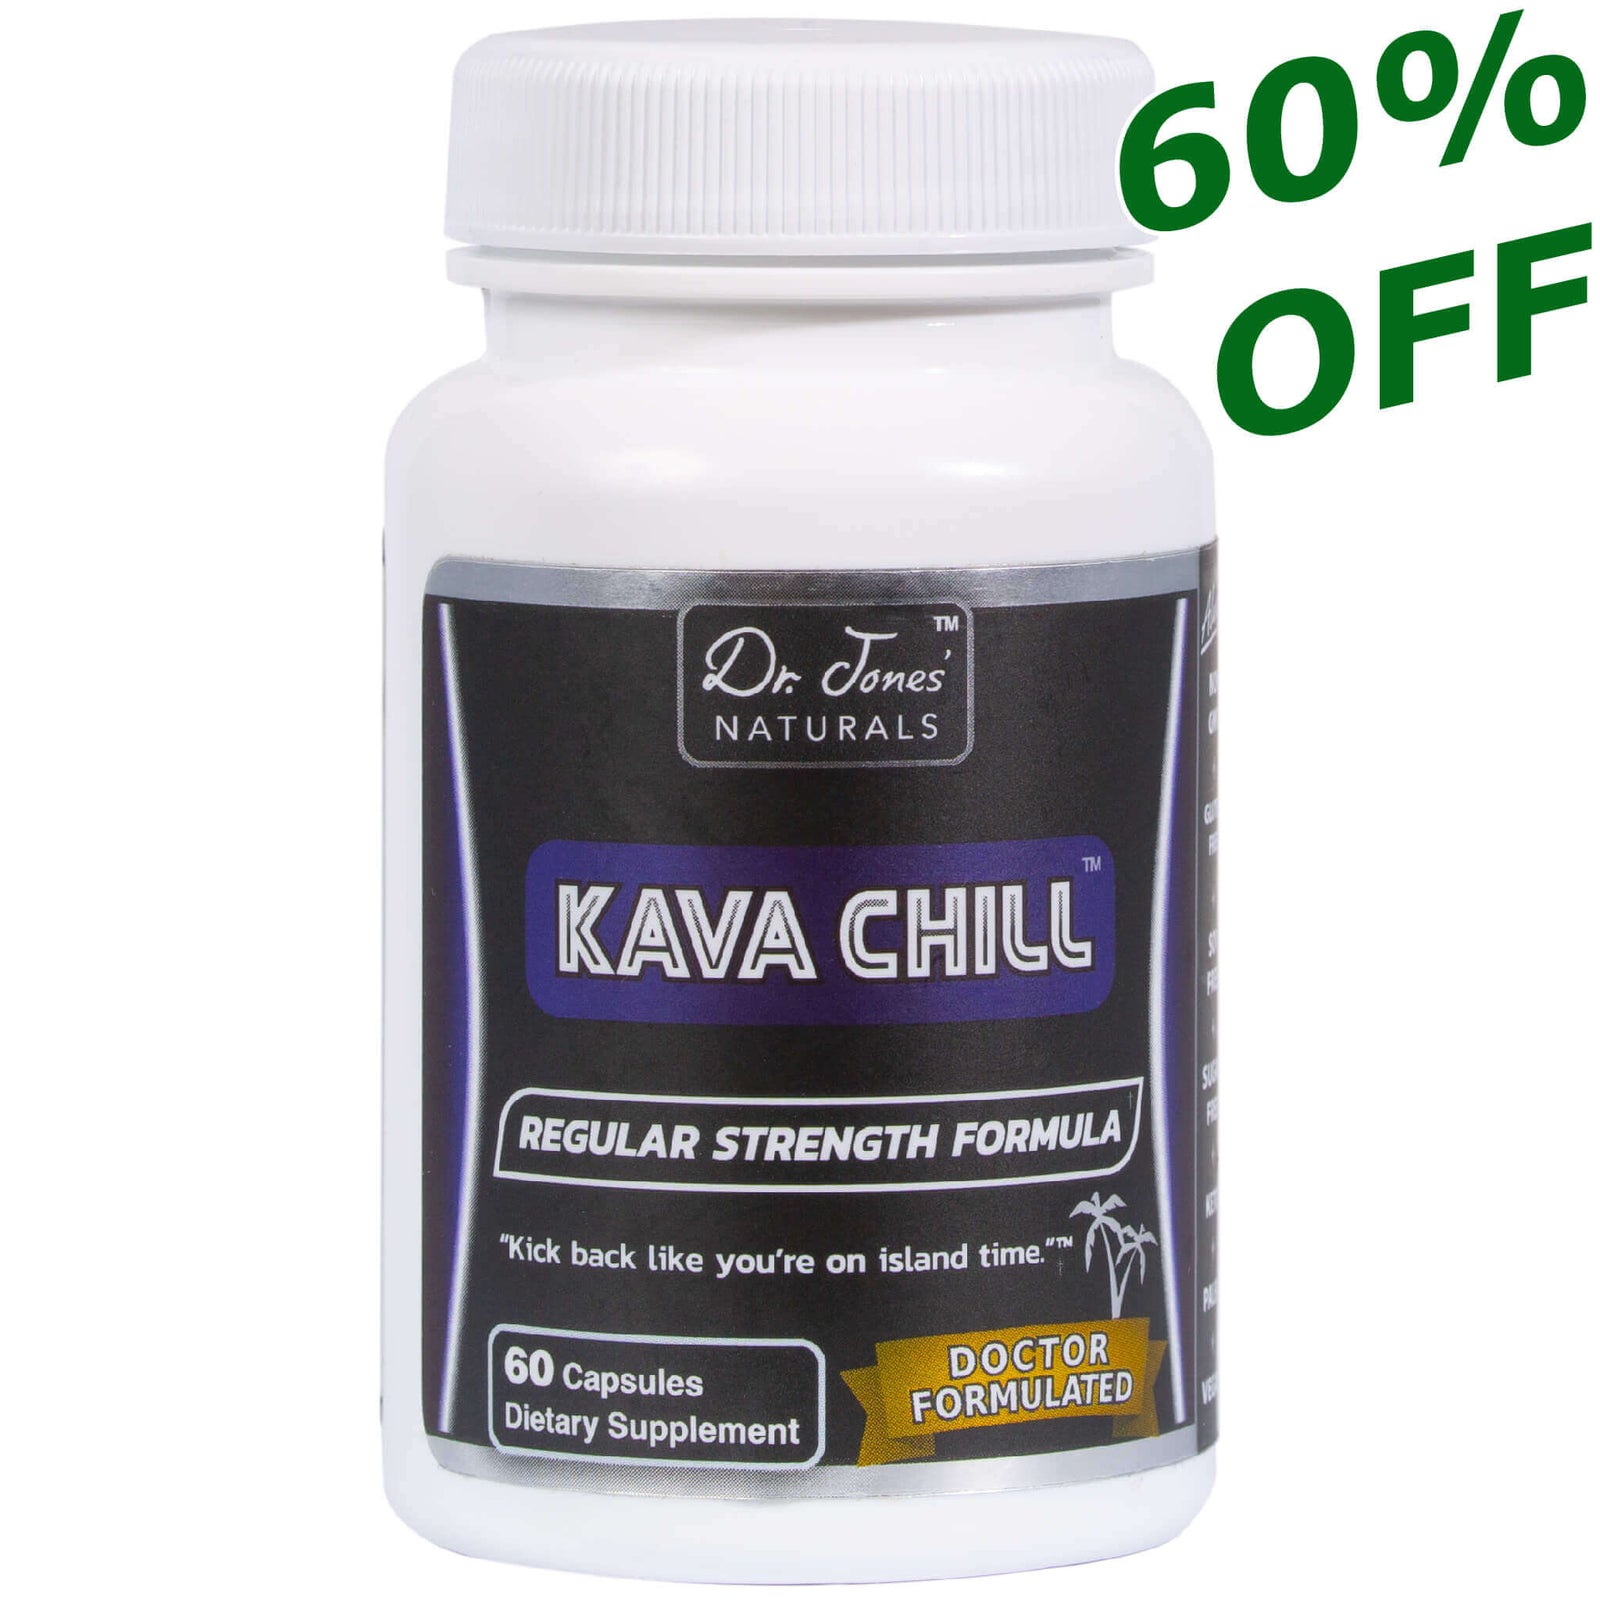 Regular Strength Kava Chill